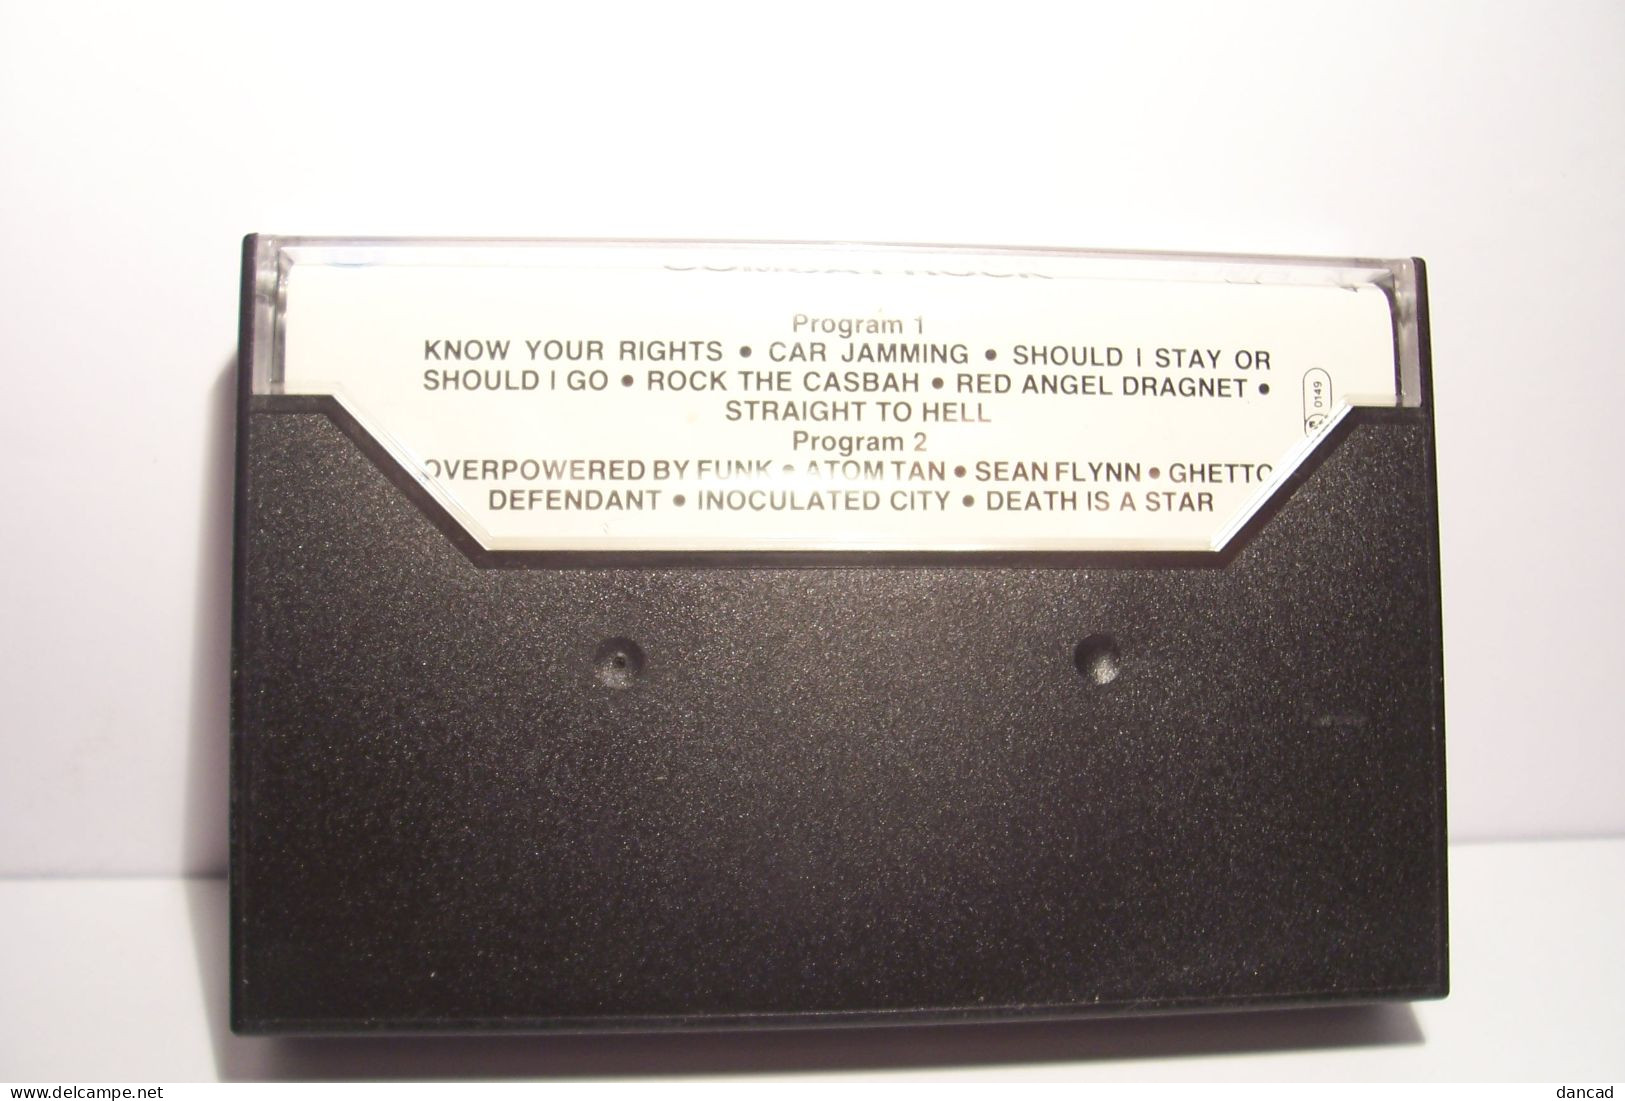 THE CLASH   - COMBAT  ROCK  - 1982    - K7 Audio - 12 TITRES - - Audiocassette